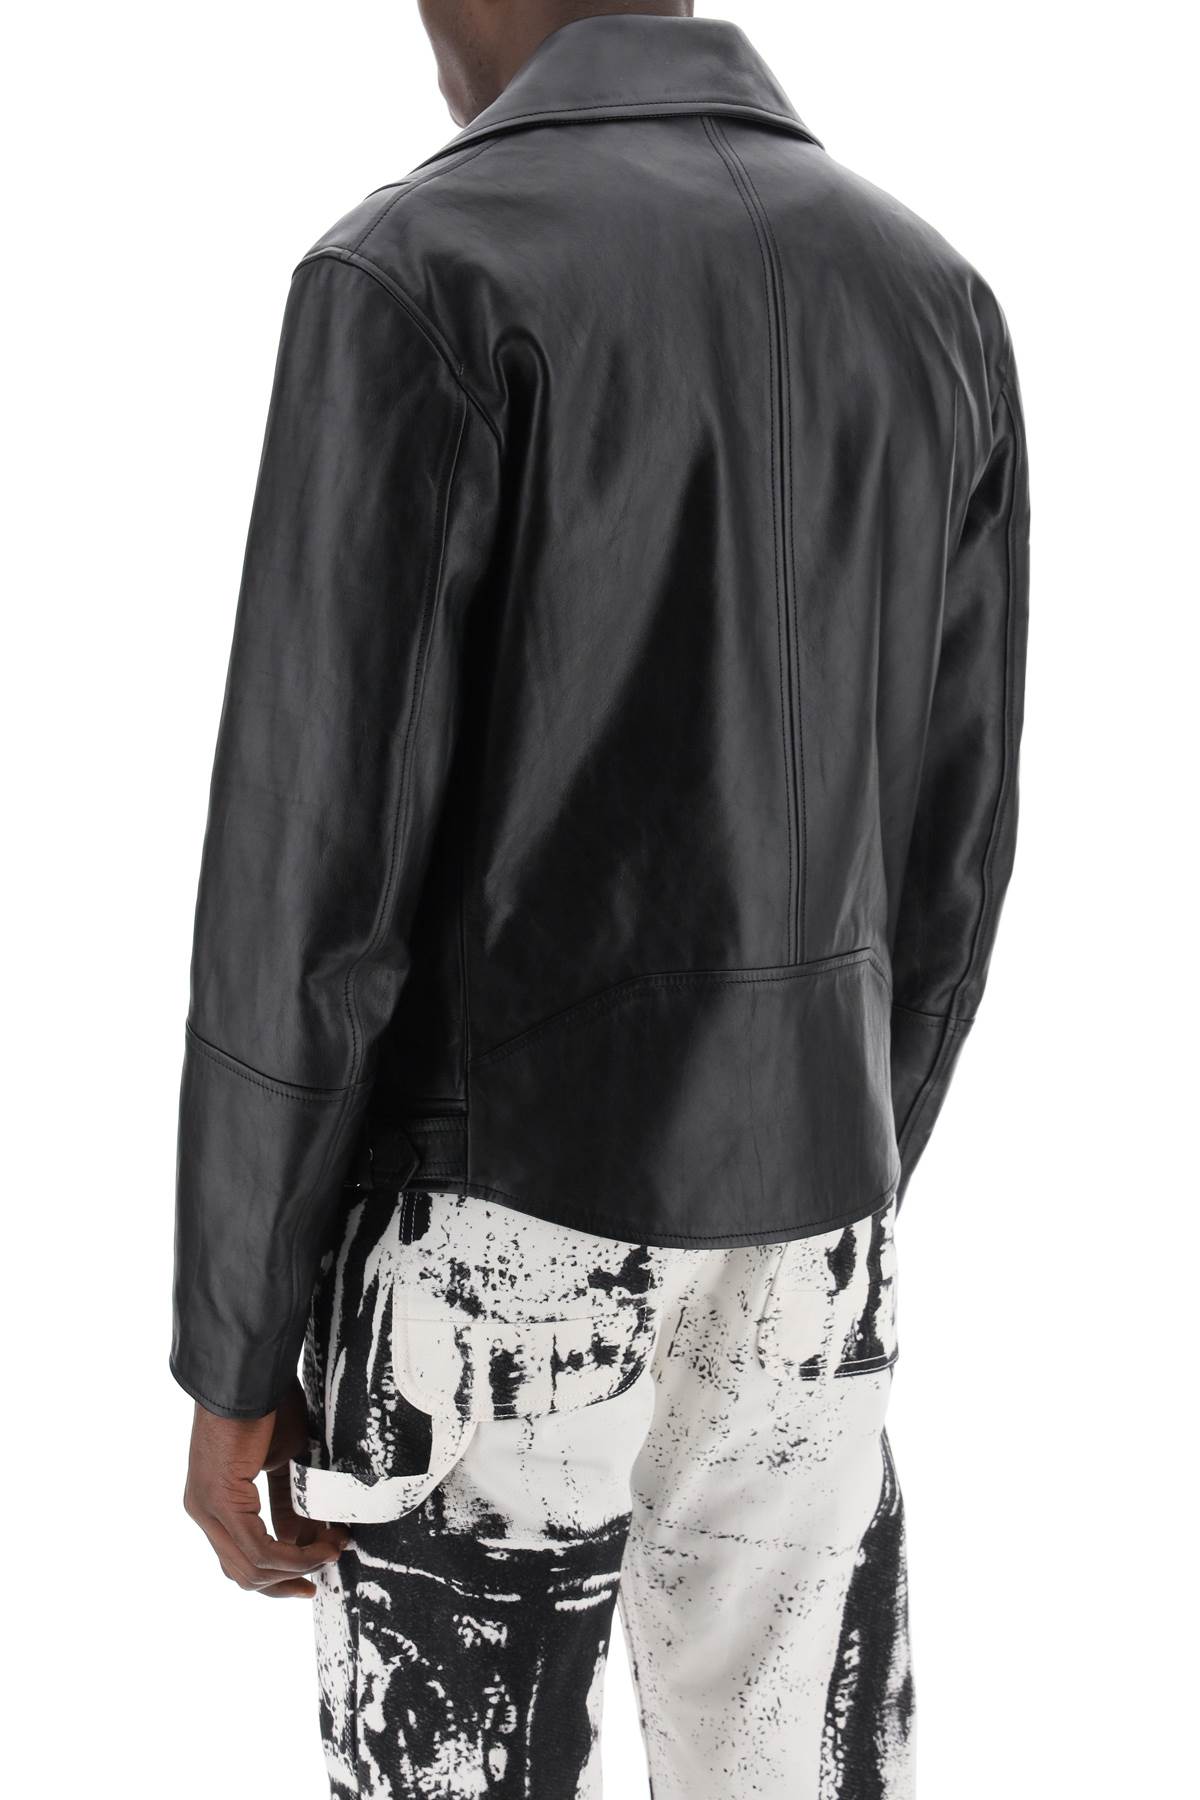 Shop Alexander Mcqueen Sleek Black Nappa Biker Jacket For Men